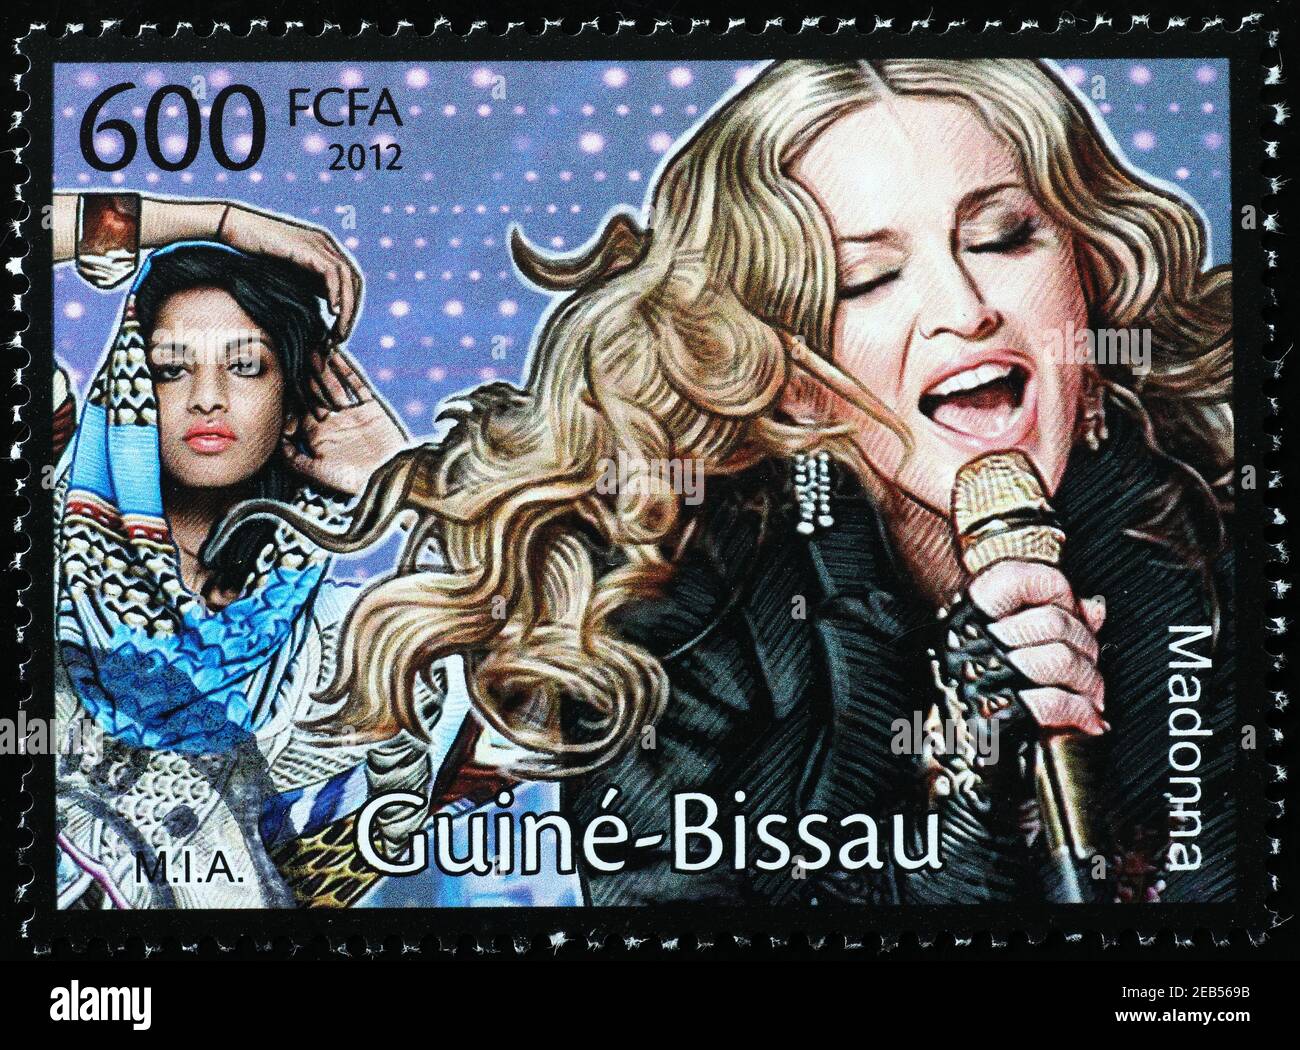 Madonna und M.I.A. auf Briefmarke Stockfoto